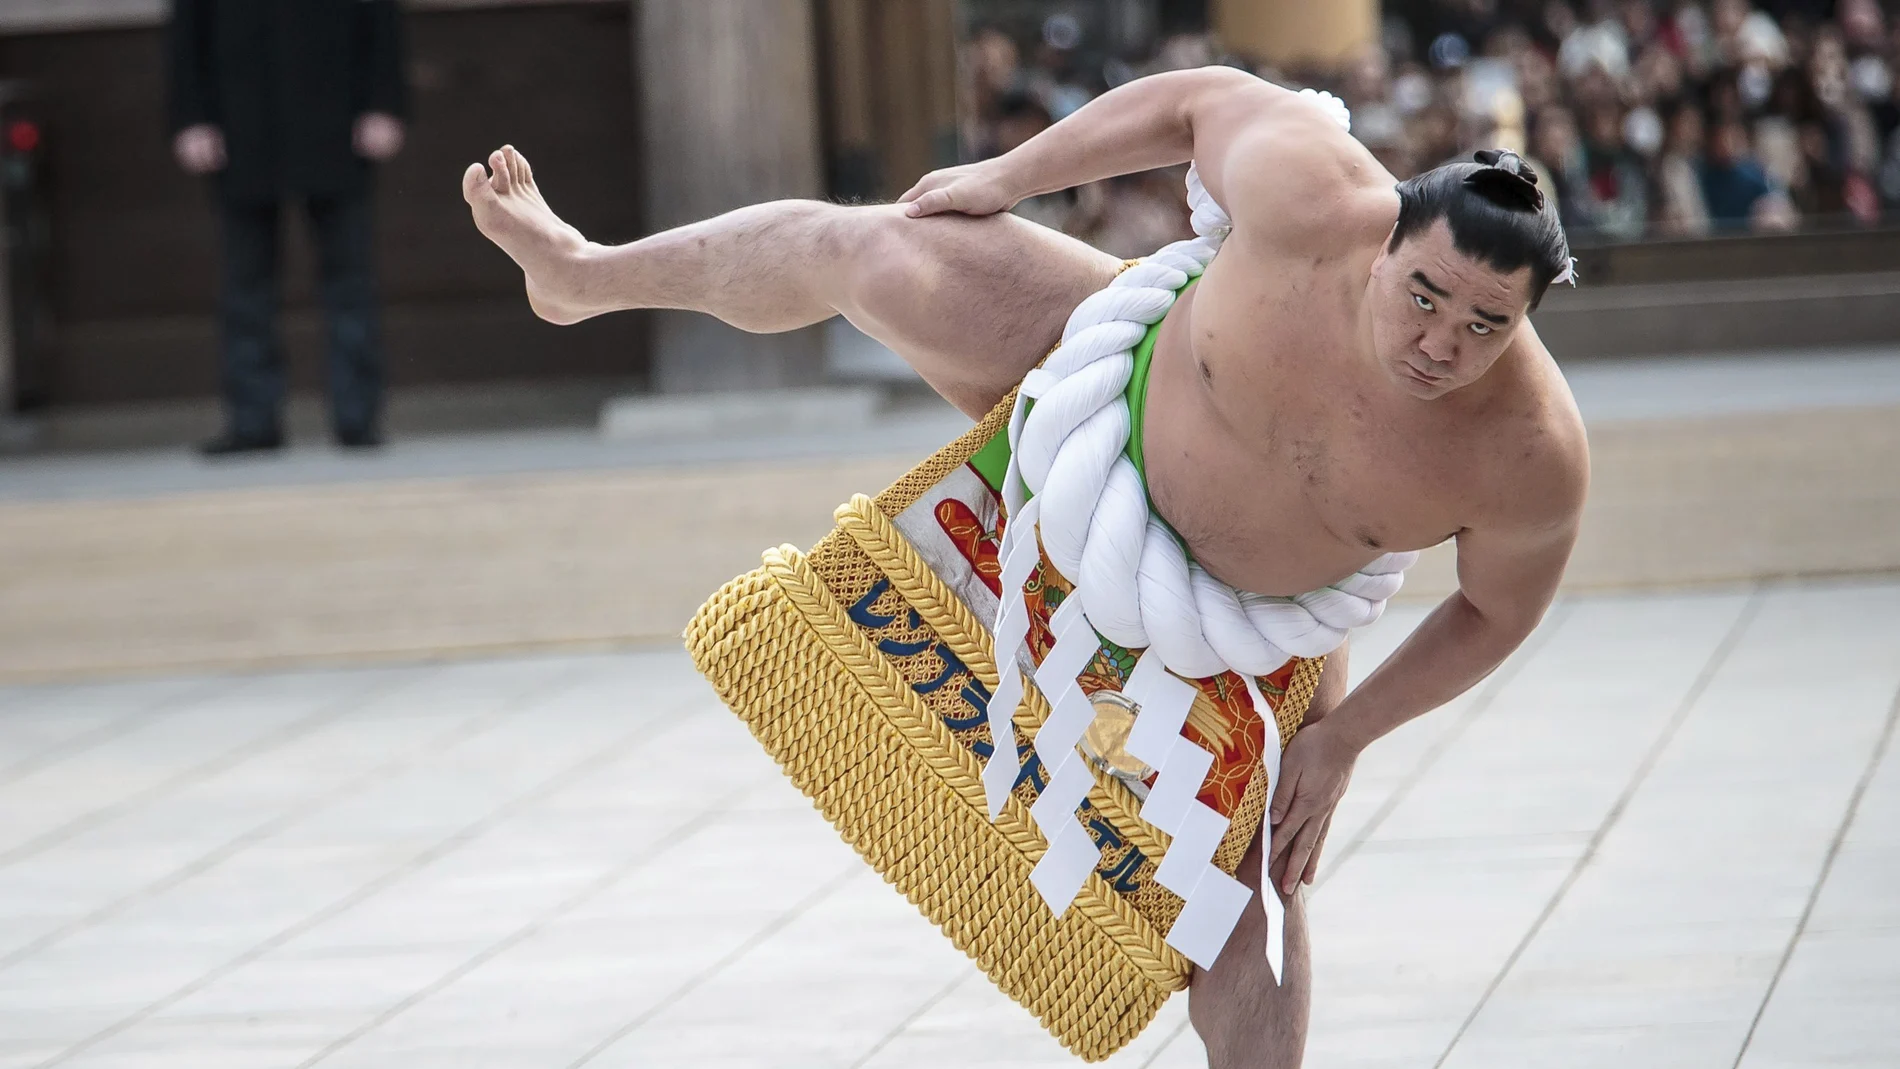 El campeón de sumo Harumafuji Kohei.